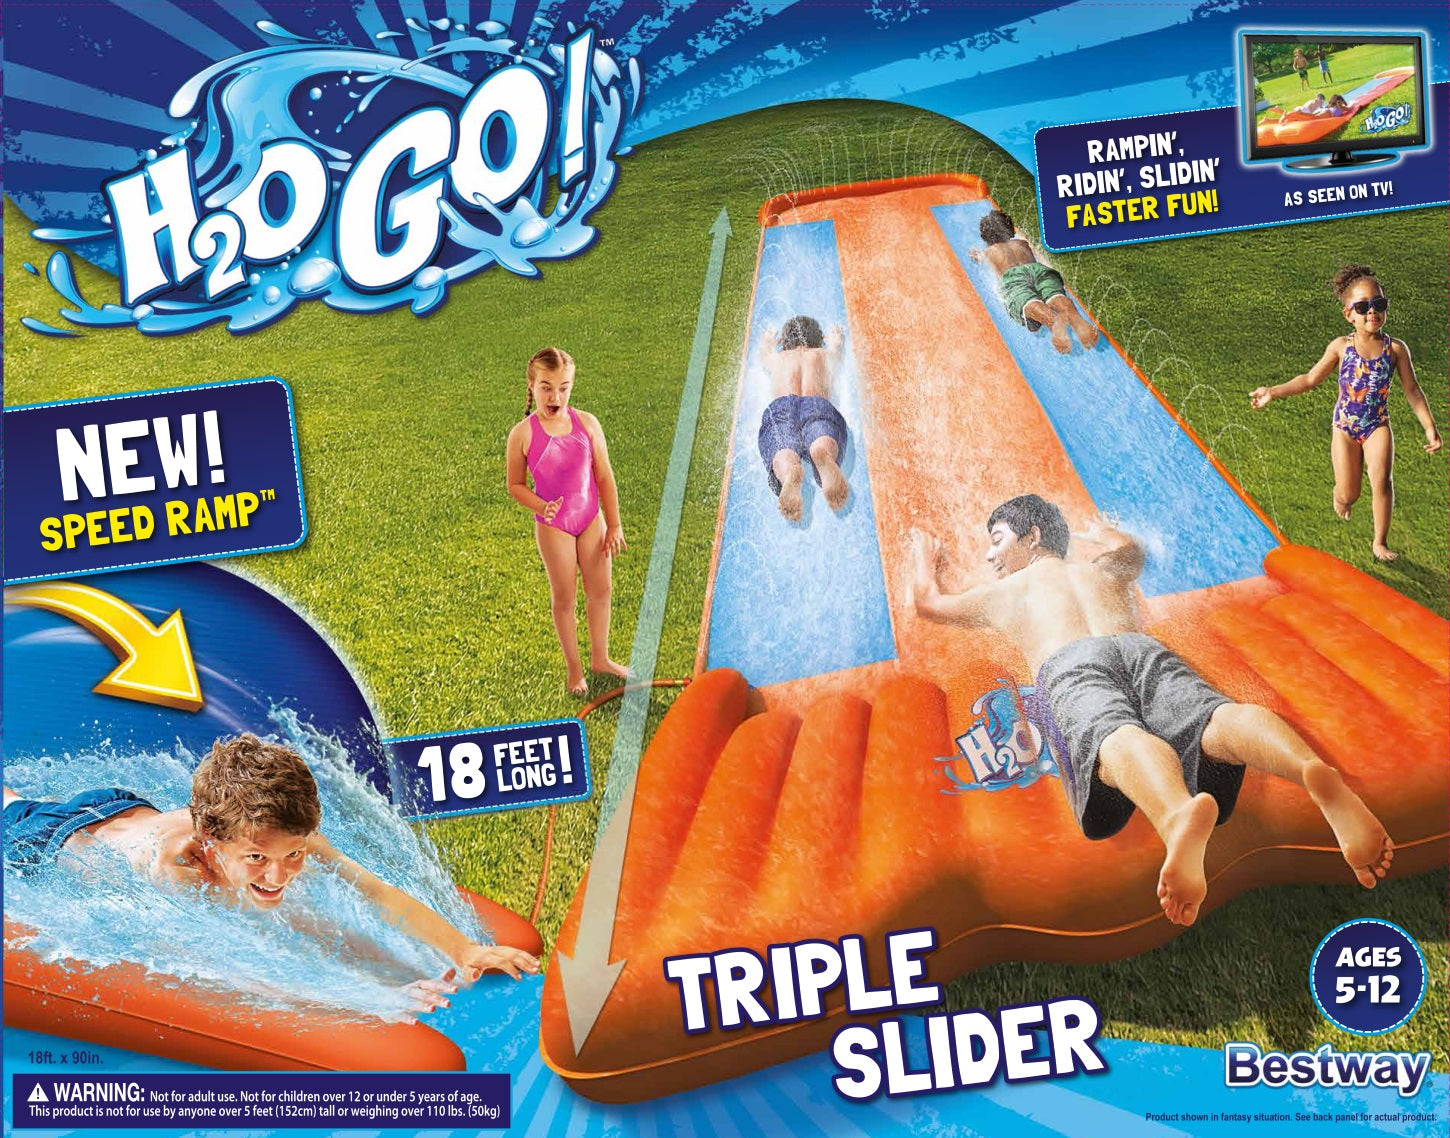 Best Way Backyard Water Slide: Single, Double, Triple Slider